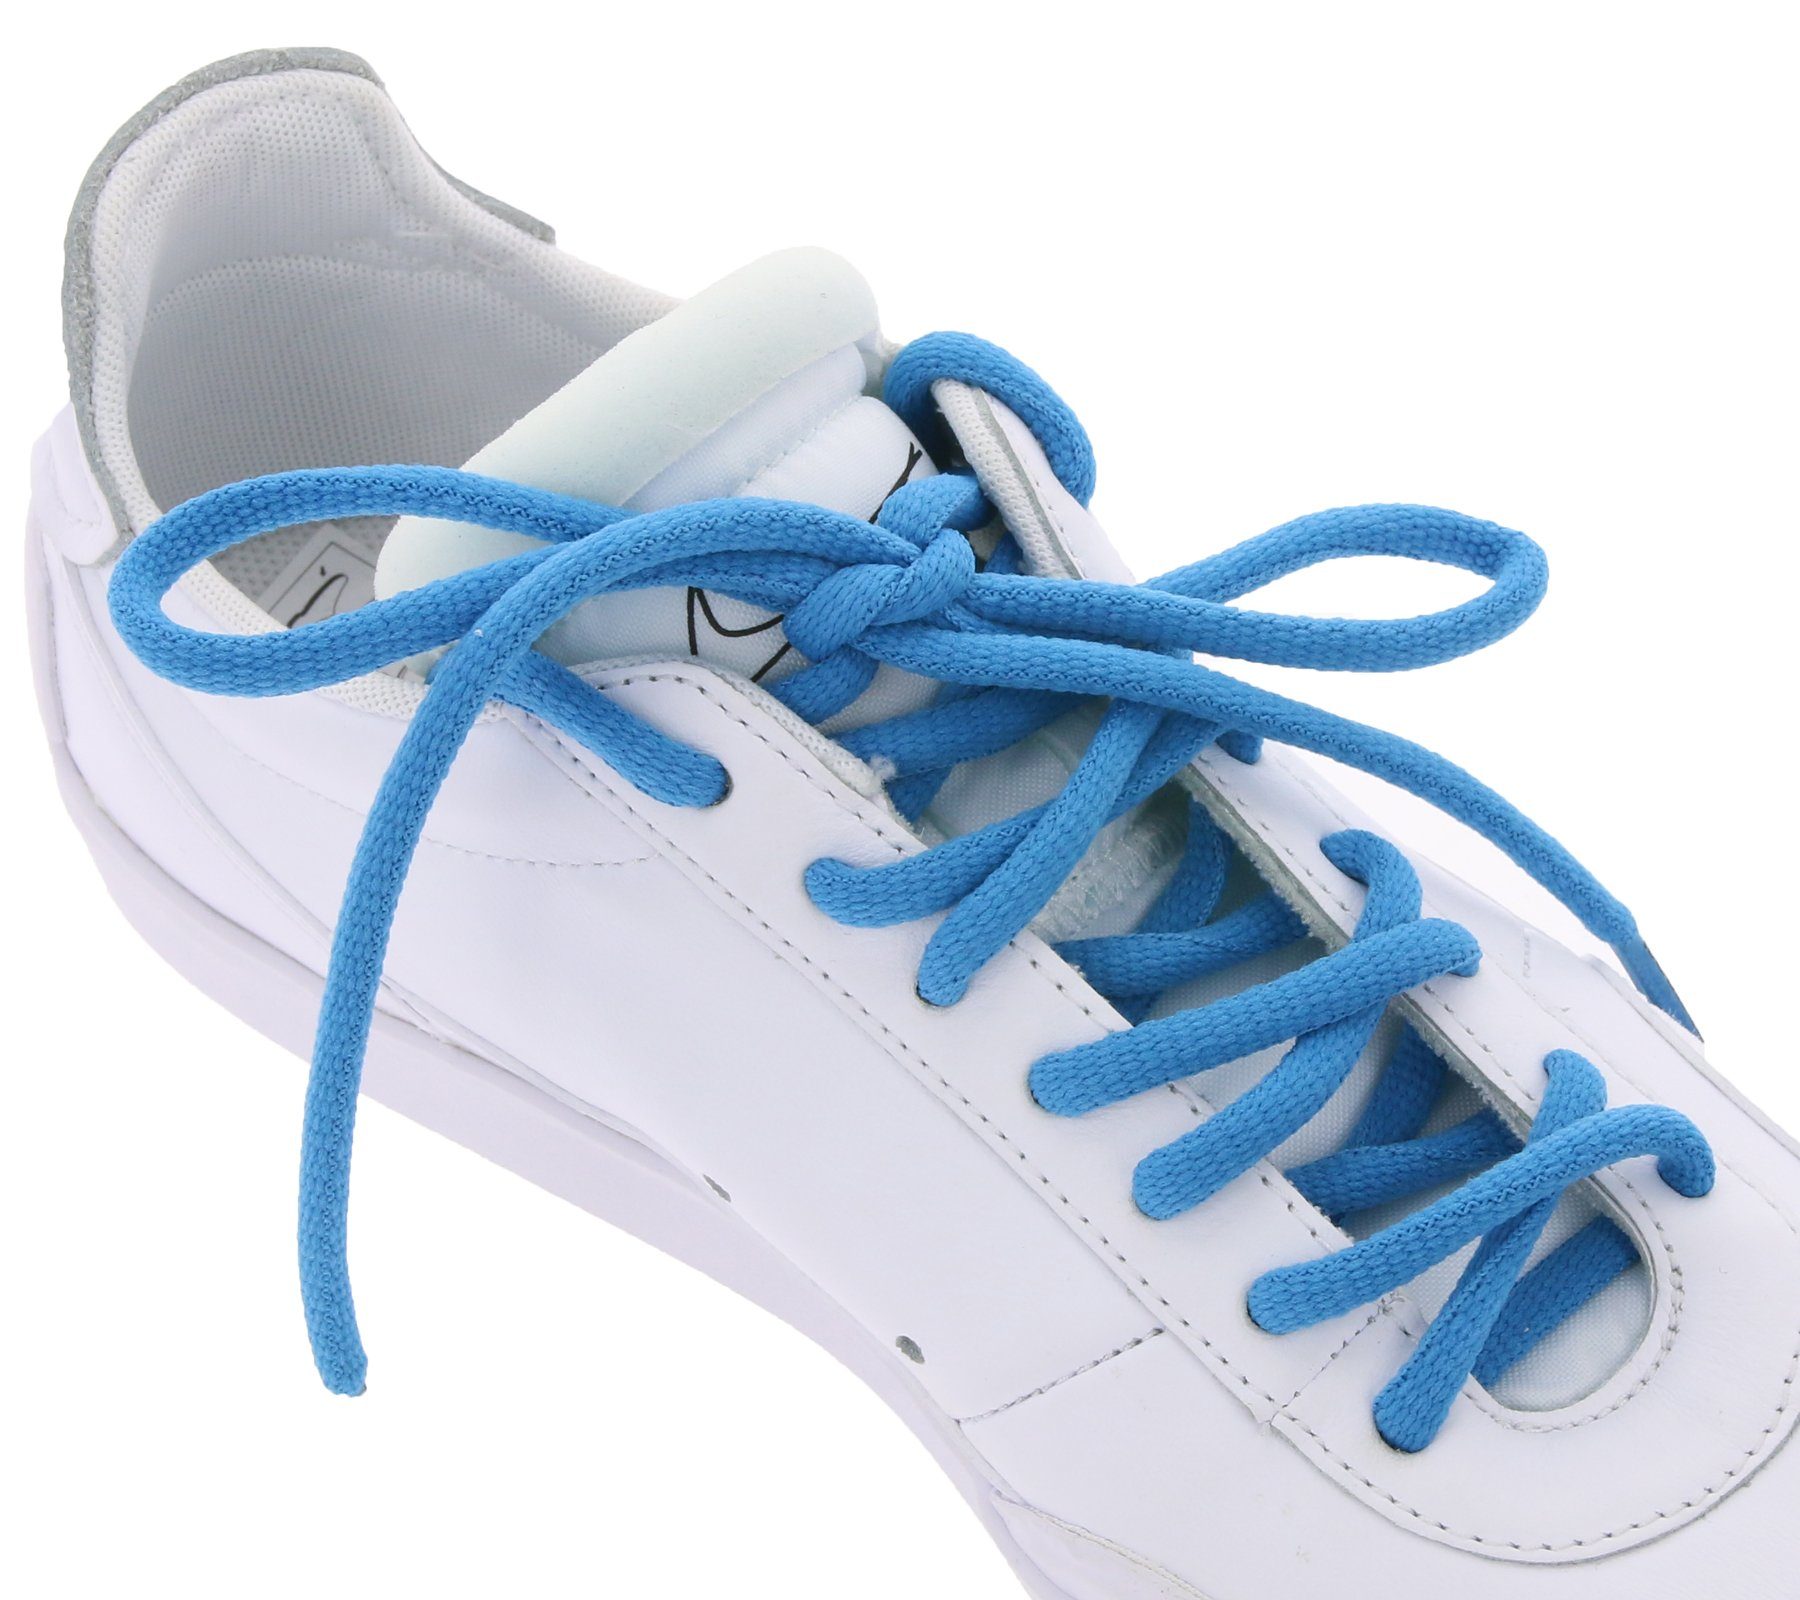 Tubelaces Schnürsenkel TubeLaces Schuhe Schnürsenkel top angesagte Schuhband Schnürbänder Blau